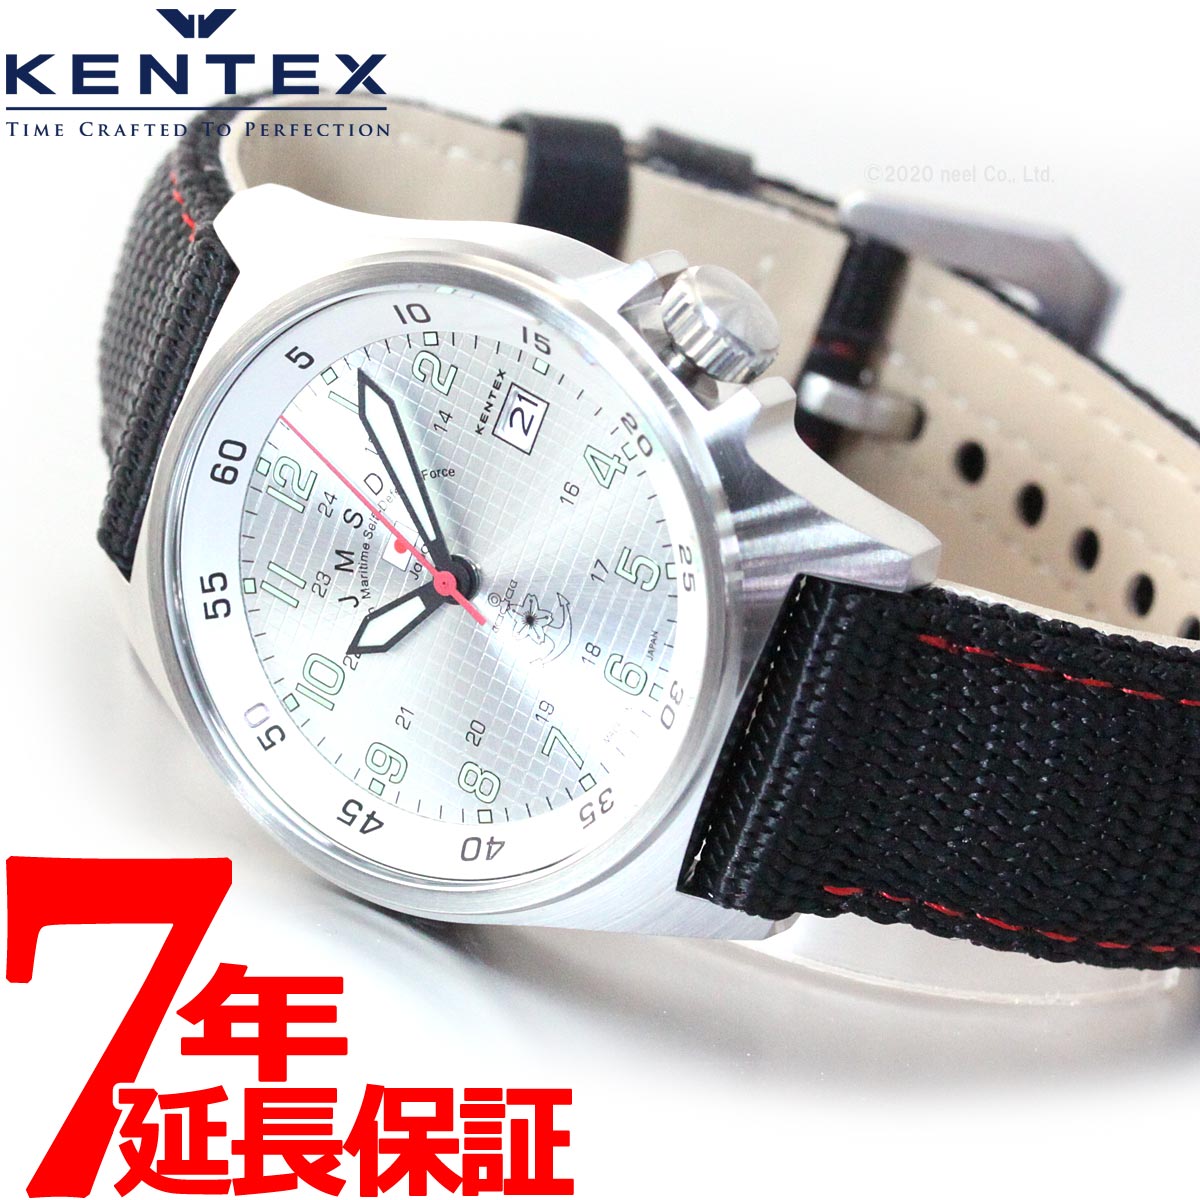 KENTEX ケンテックス 腕時計 メンズ JSDF スタンダード 自衛隊モデル 海上自衛隊 ナイロンバンド S455M-03【正規品】